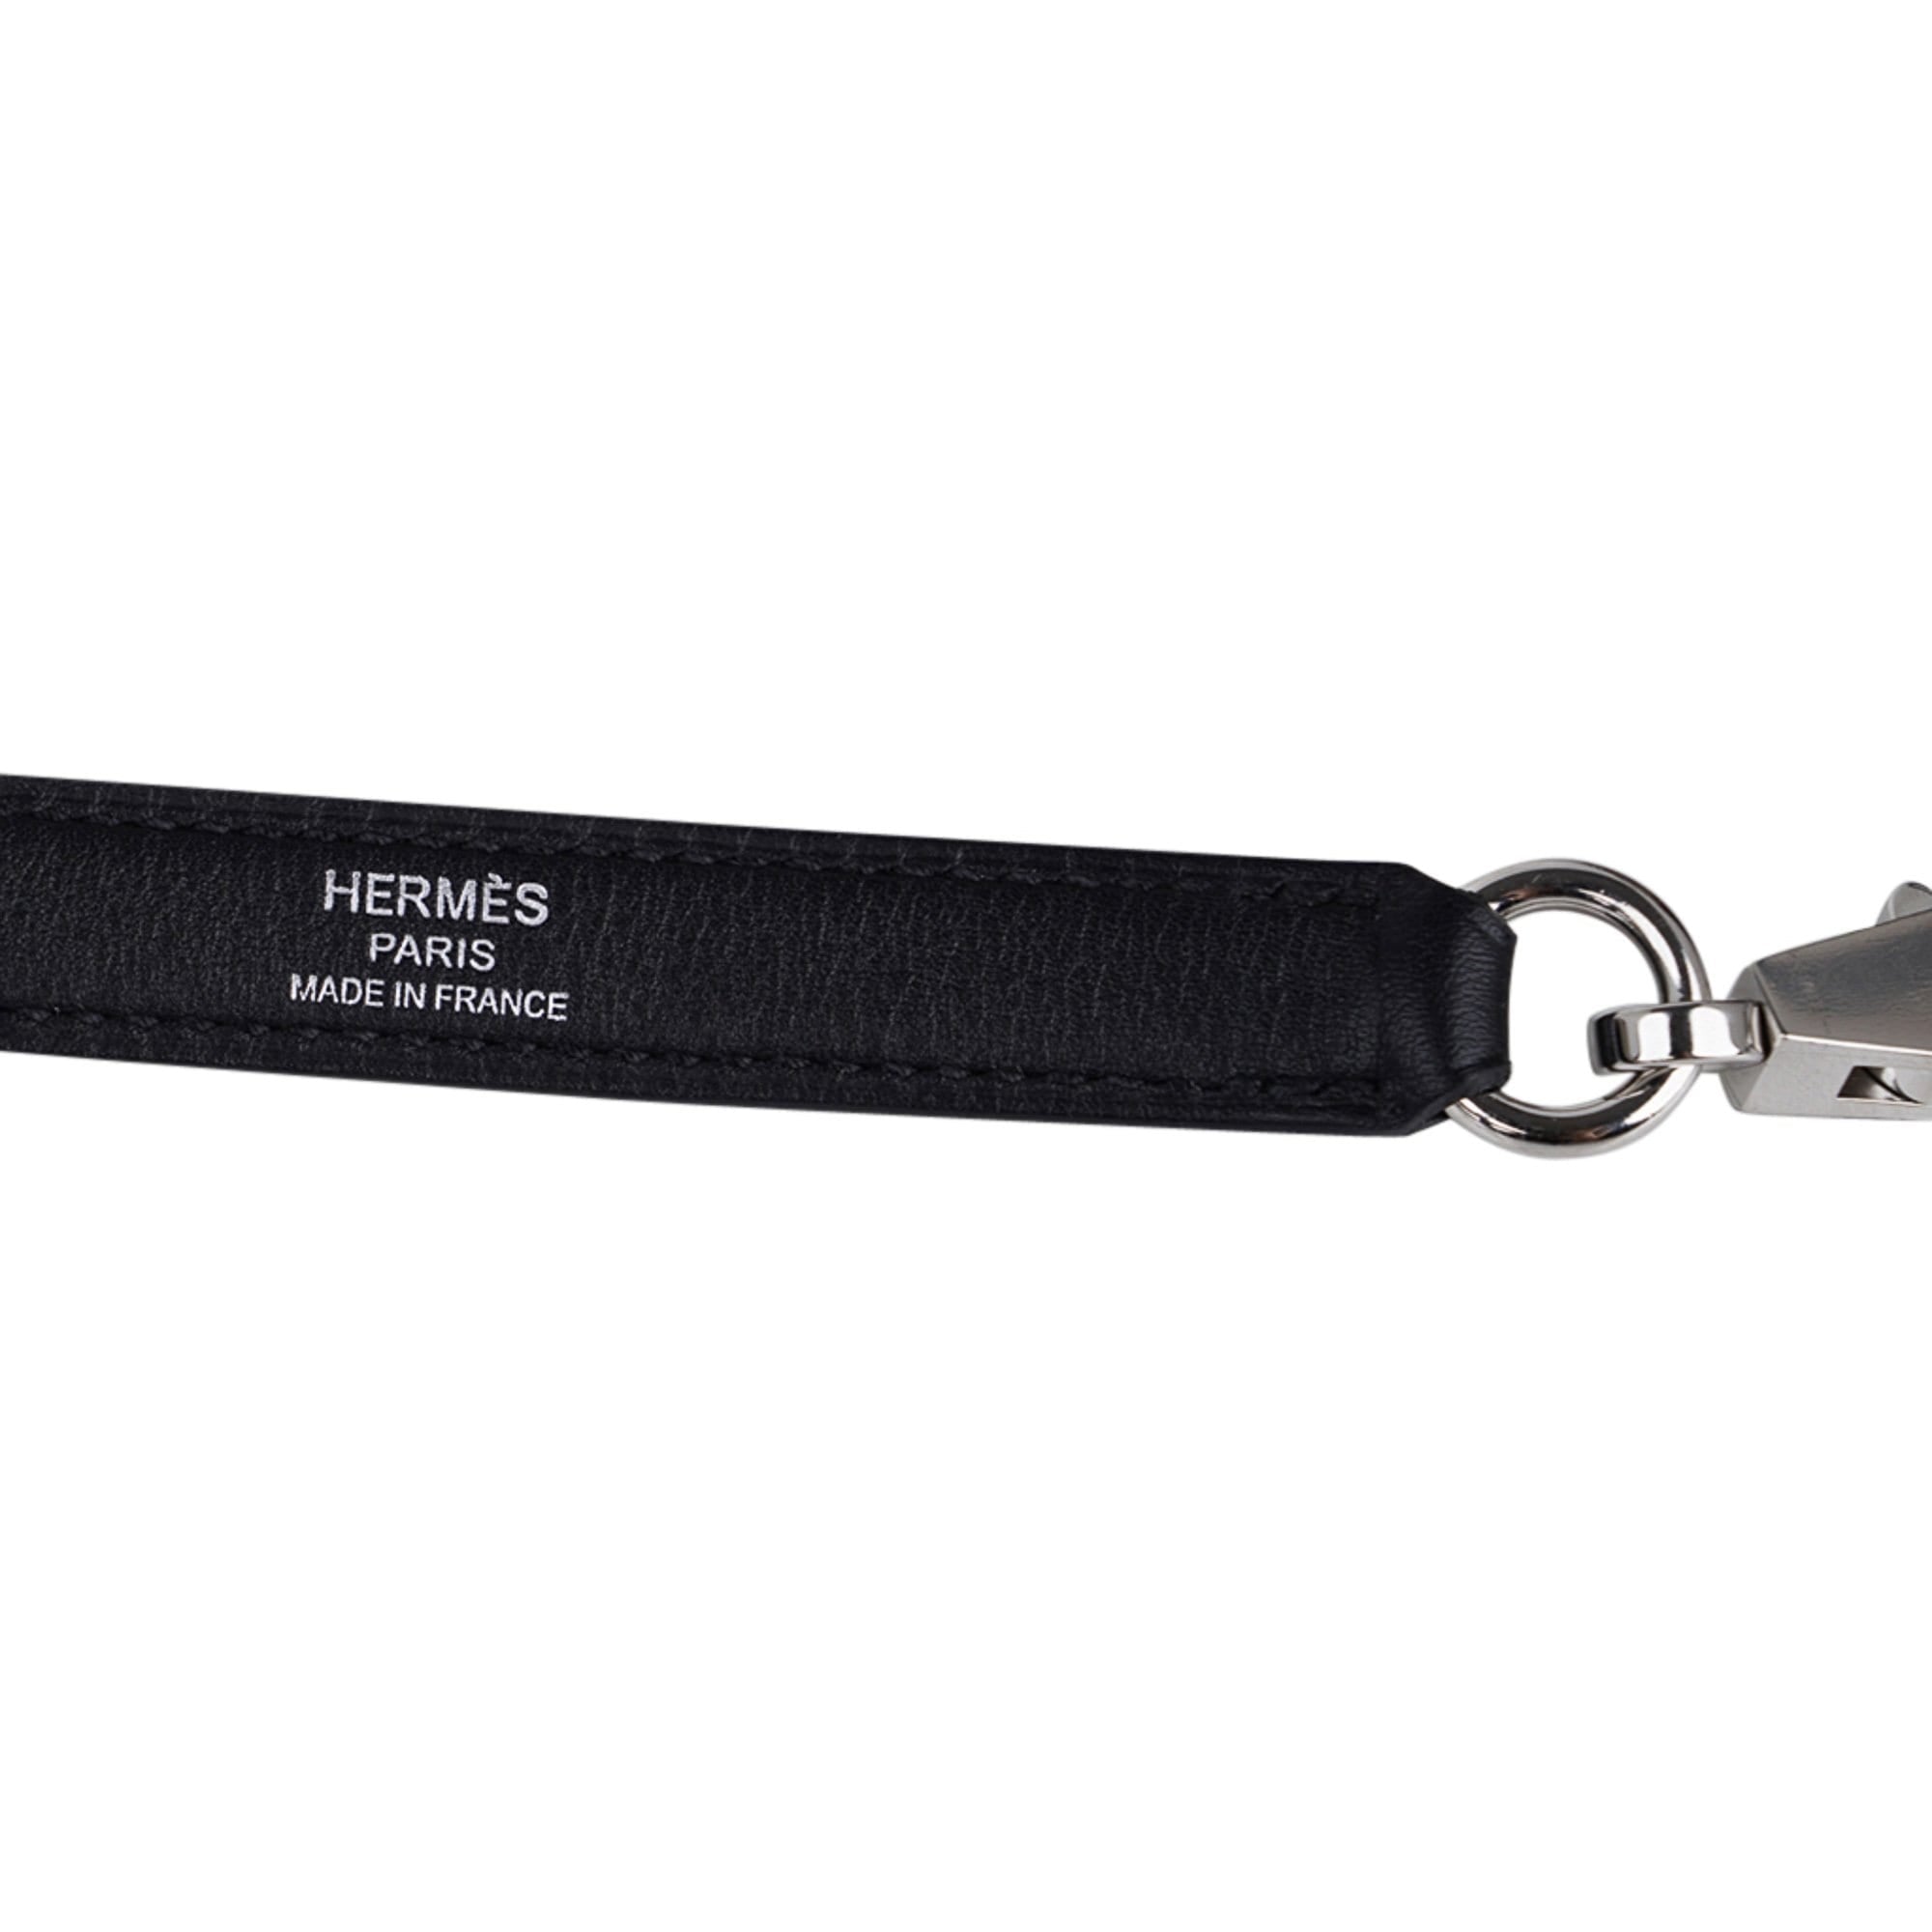 Hermes Kelly 25 Sellier Quadrille Viking Toile Black & White Bag